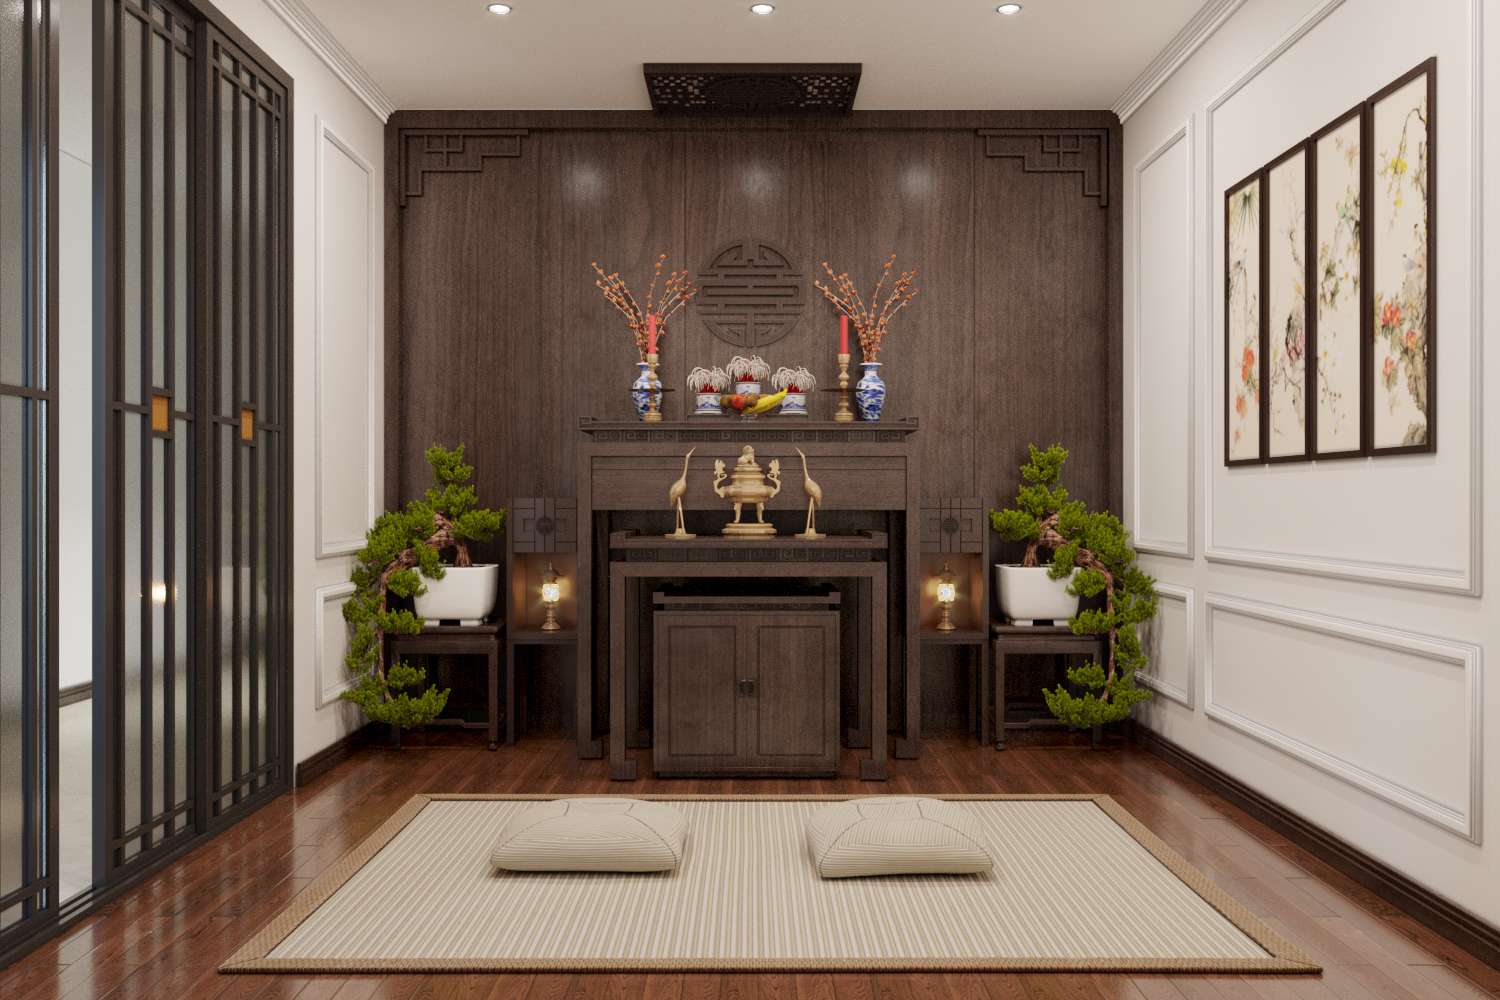 Phòng thờ trang nghiêm, bài trí tinh tế, nổi bật với hai chậu bonsai đối xứng hai bên.